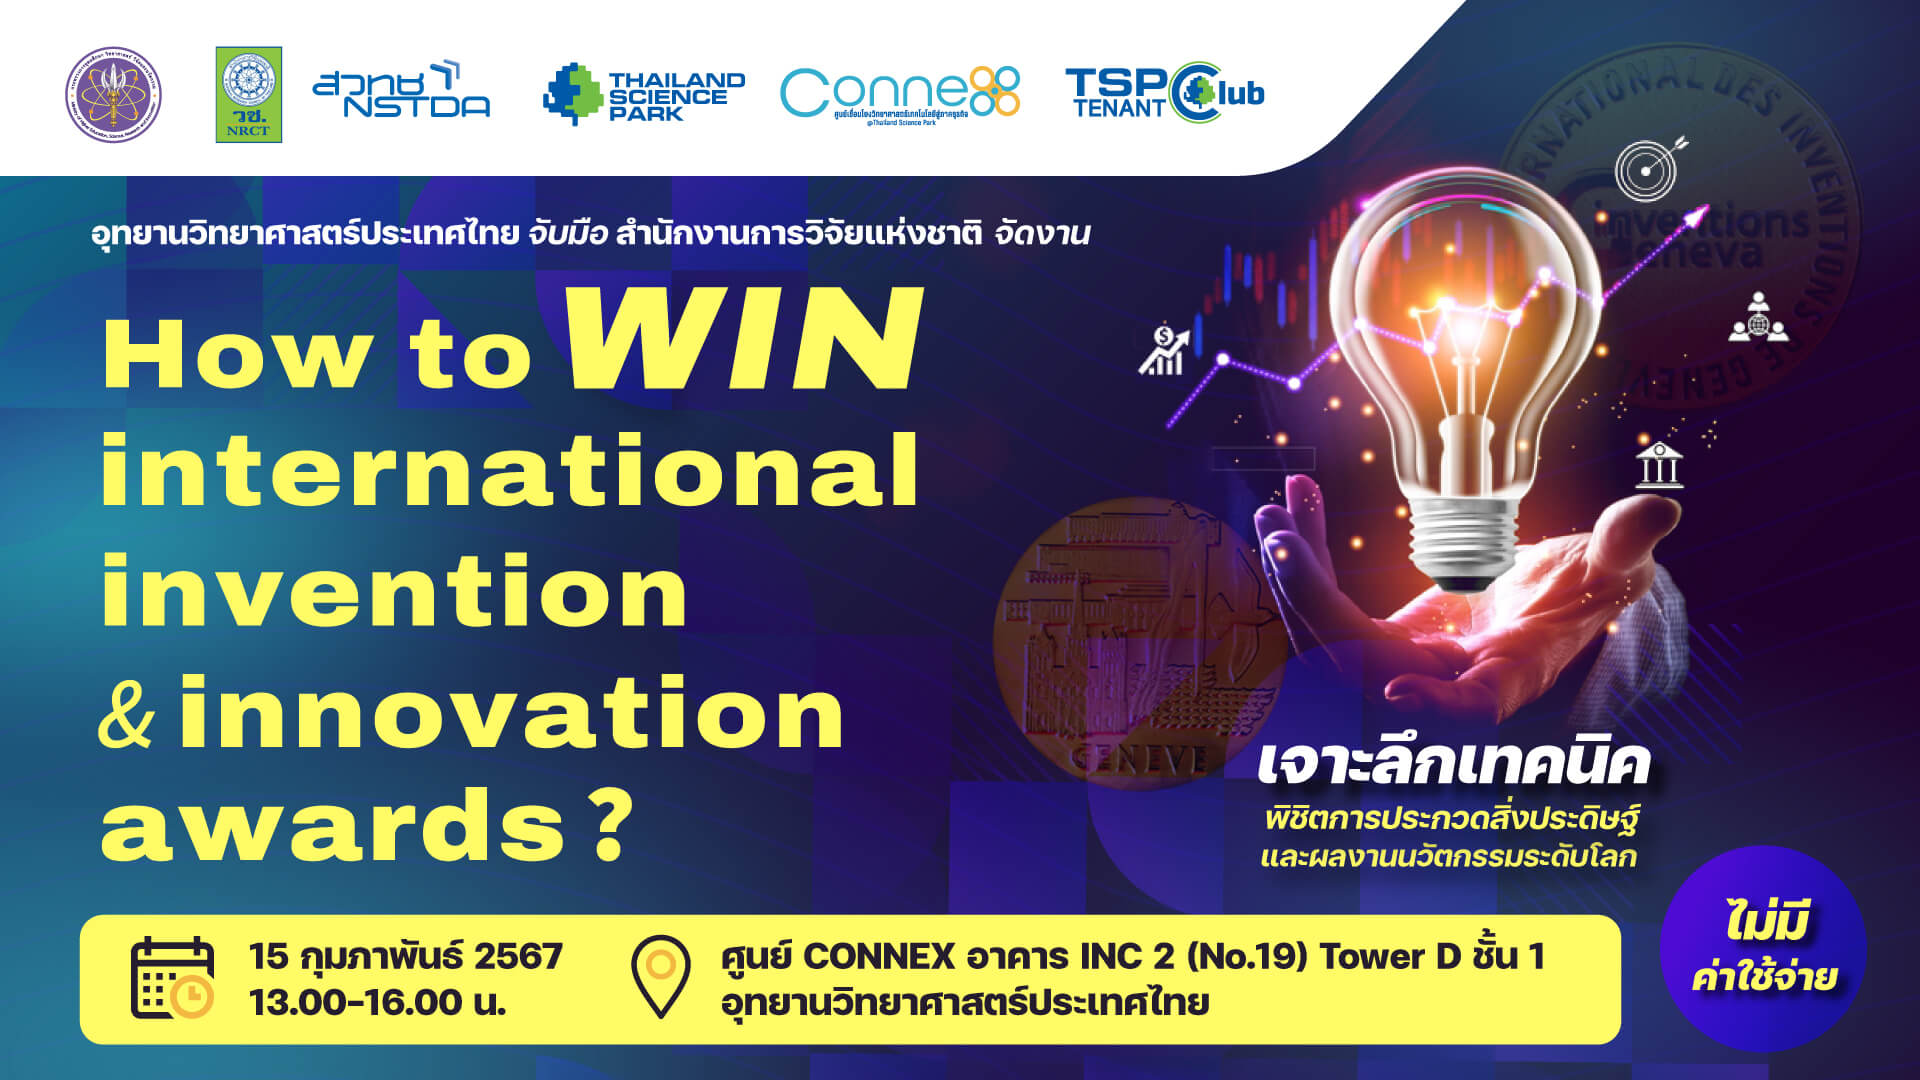 ขอเชิญเข้าร่วมสัมมนา How to WIN International Invention & Innovation Awards? ไม่มีค่าใช้จ่าย รับจำนวนจำกัด